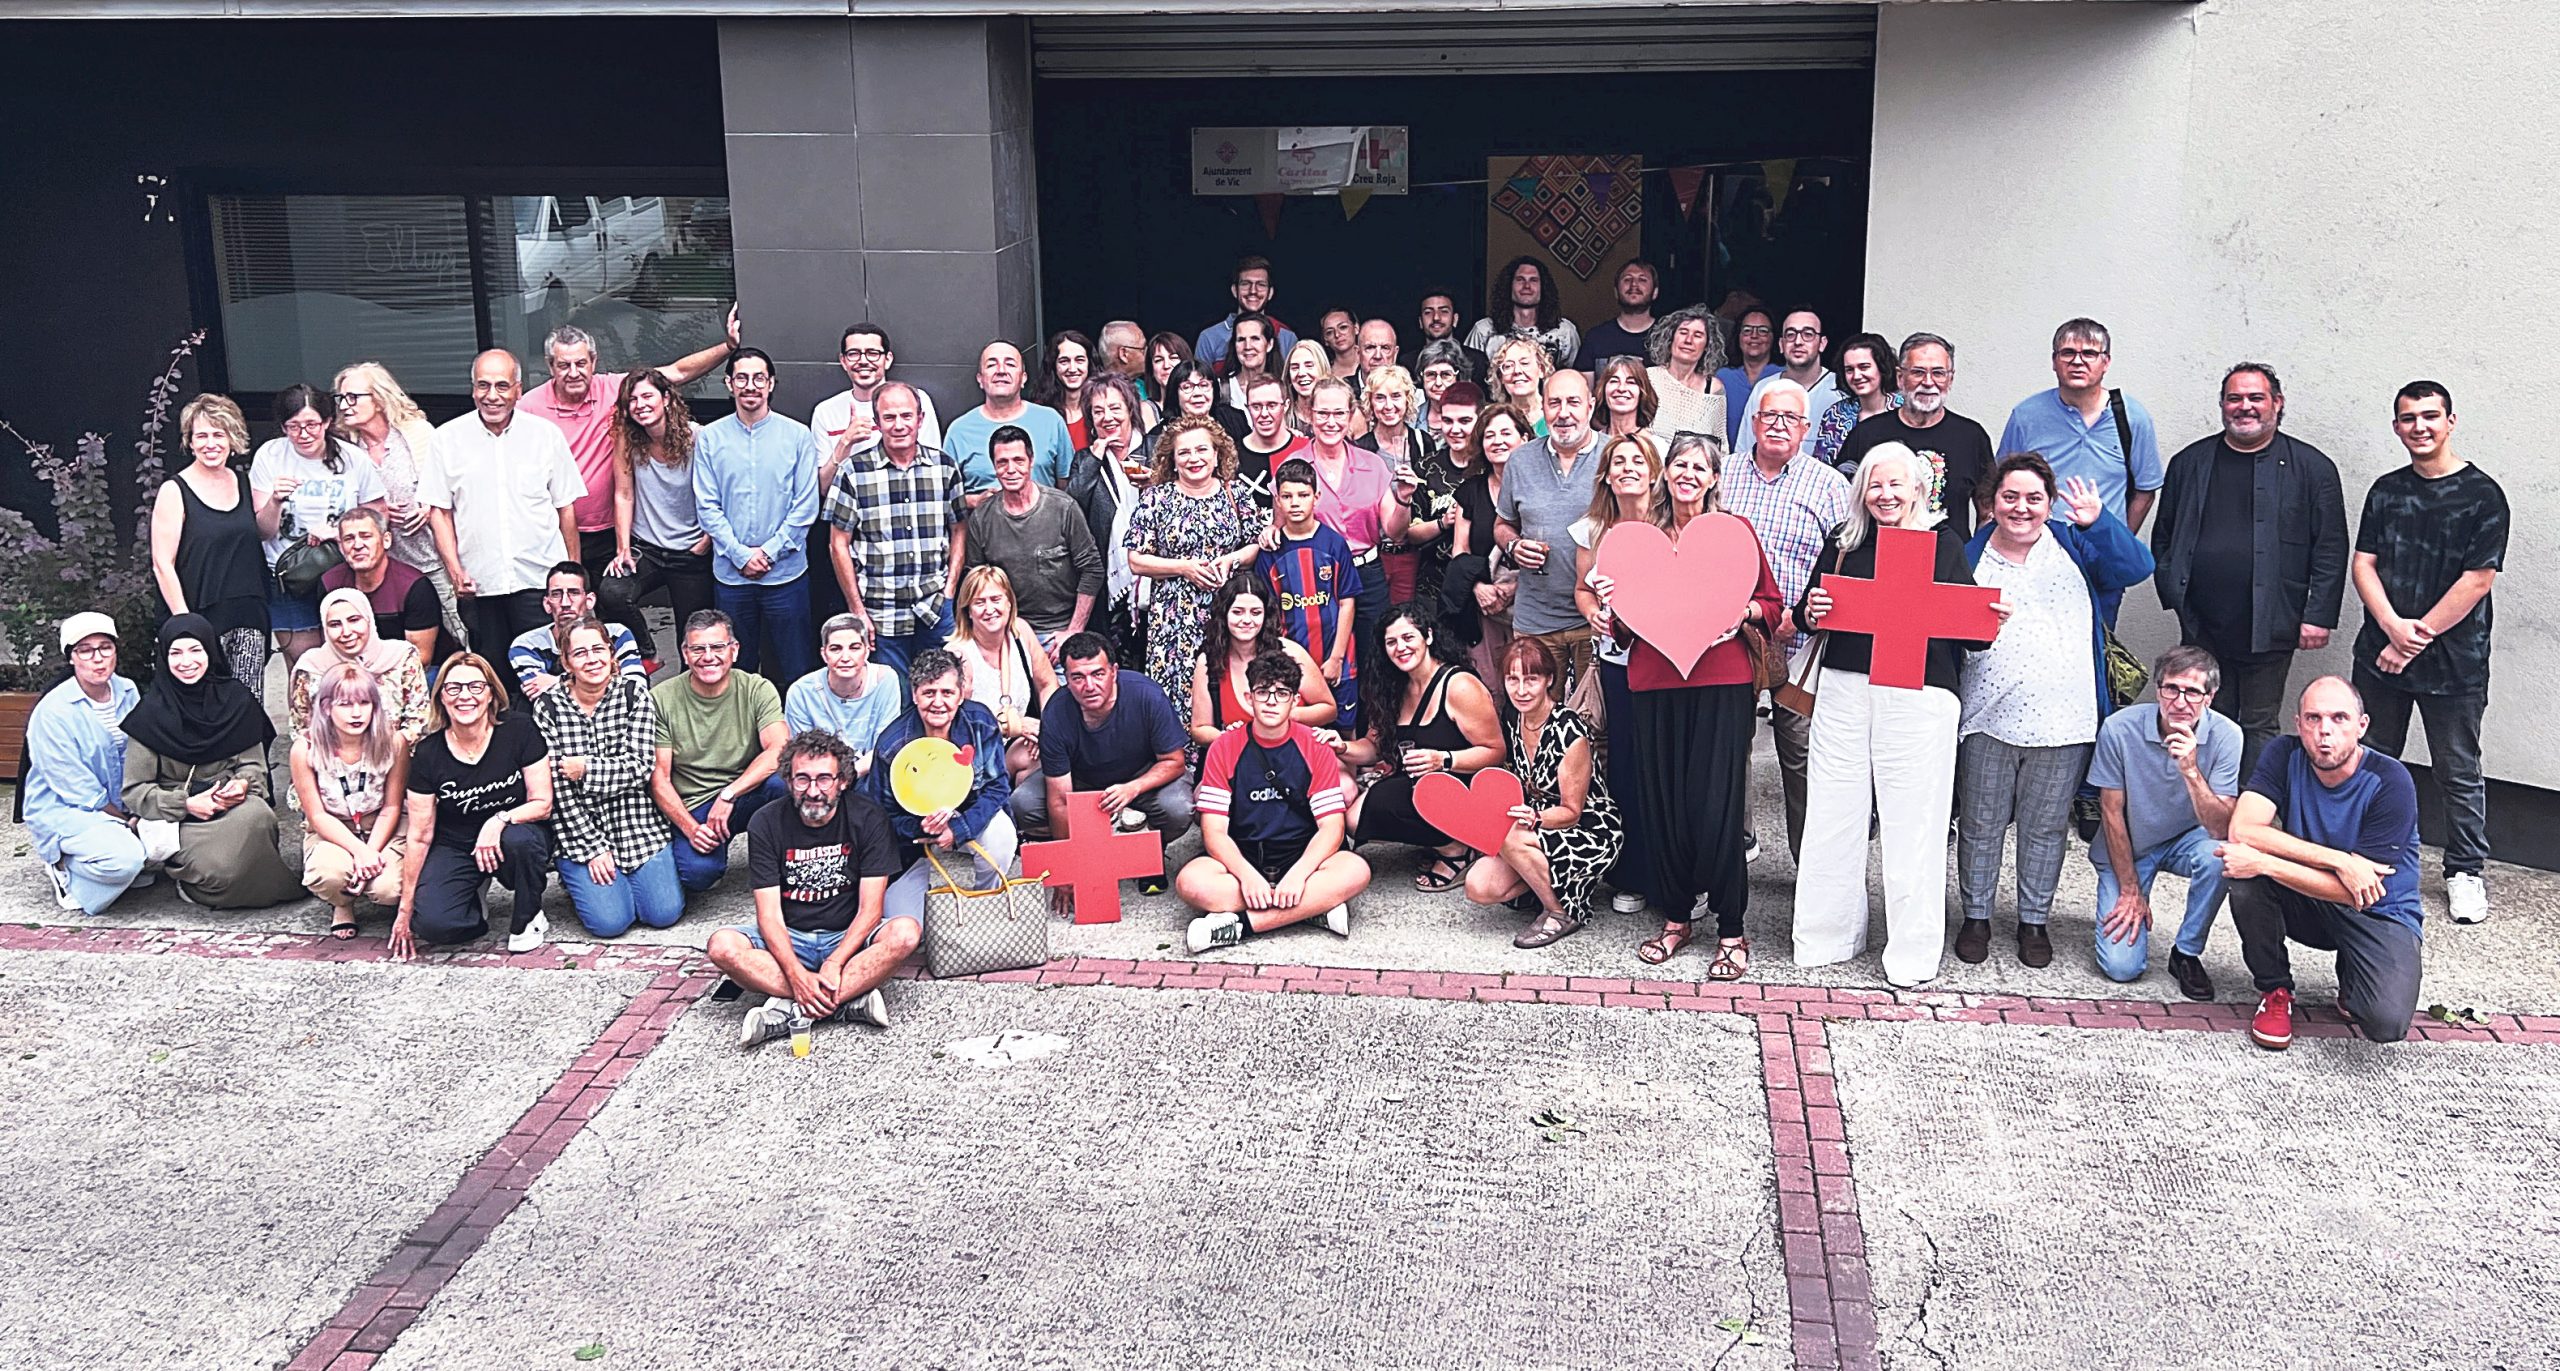 500 voluntaris van participar, el 2022, a Creu Roja Osona